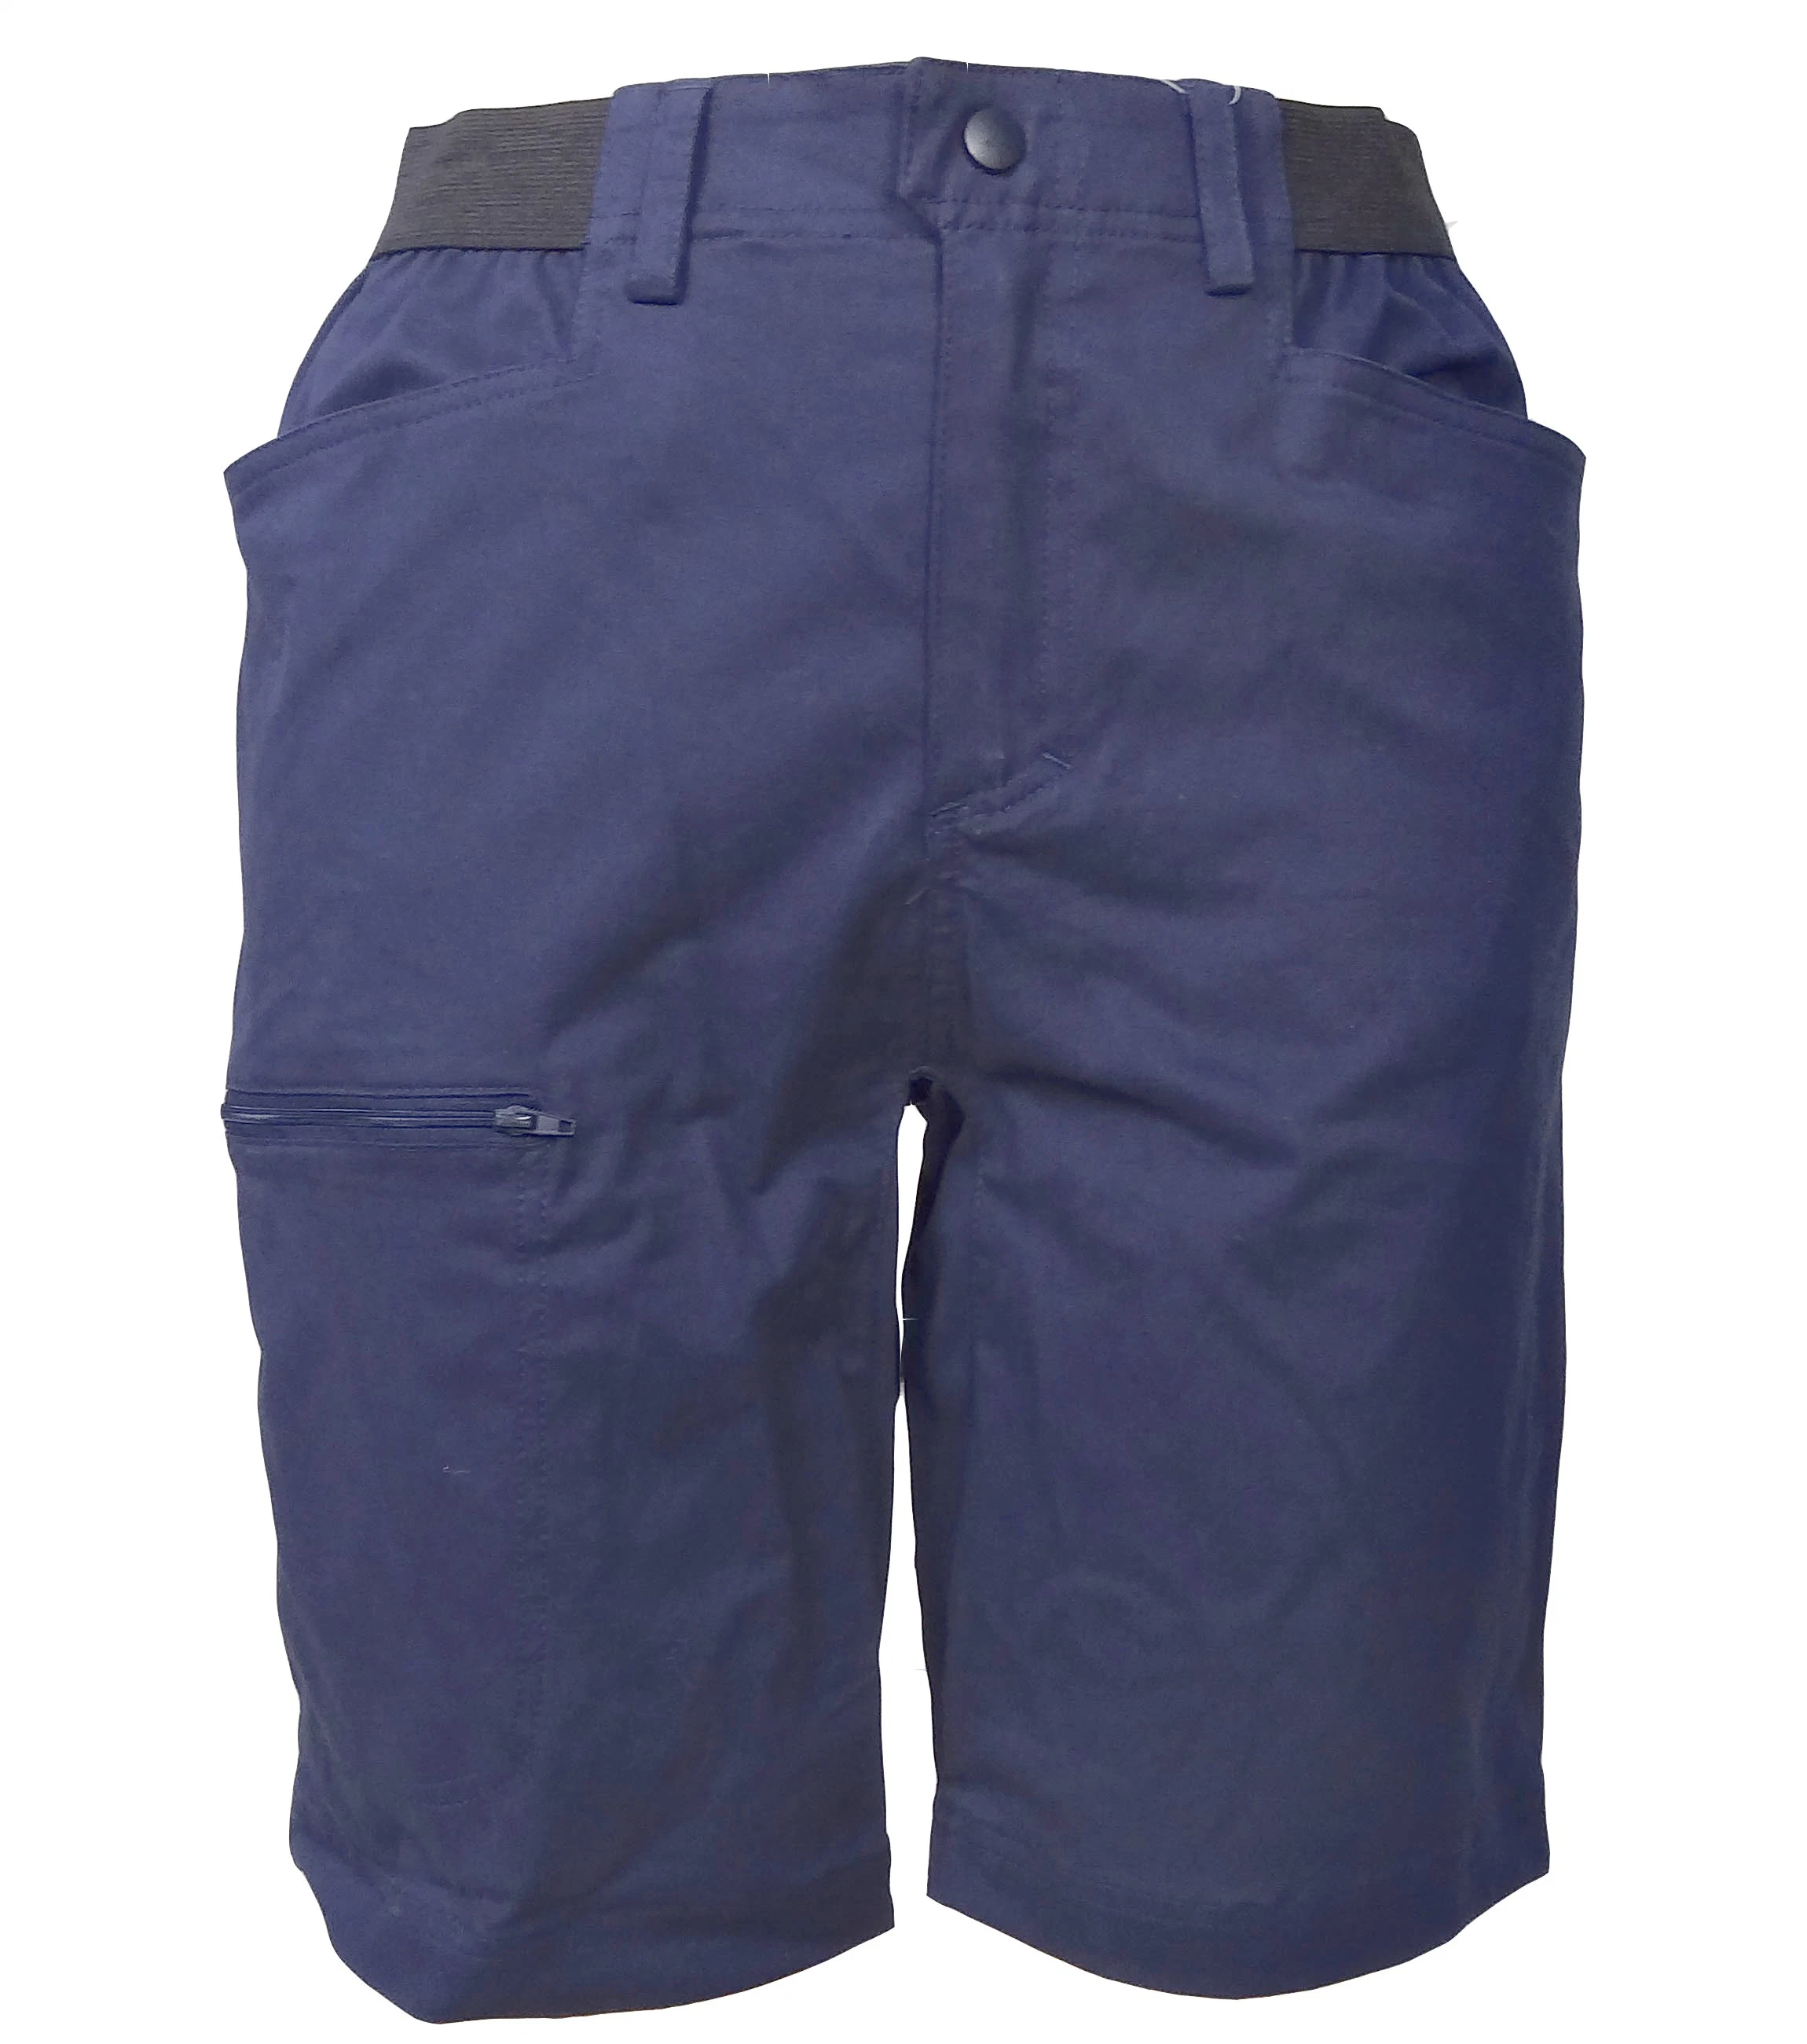 Men's Cotton Pants for Outdoor Activities